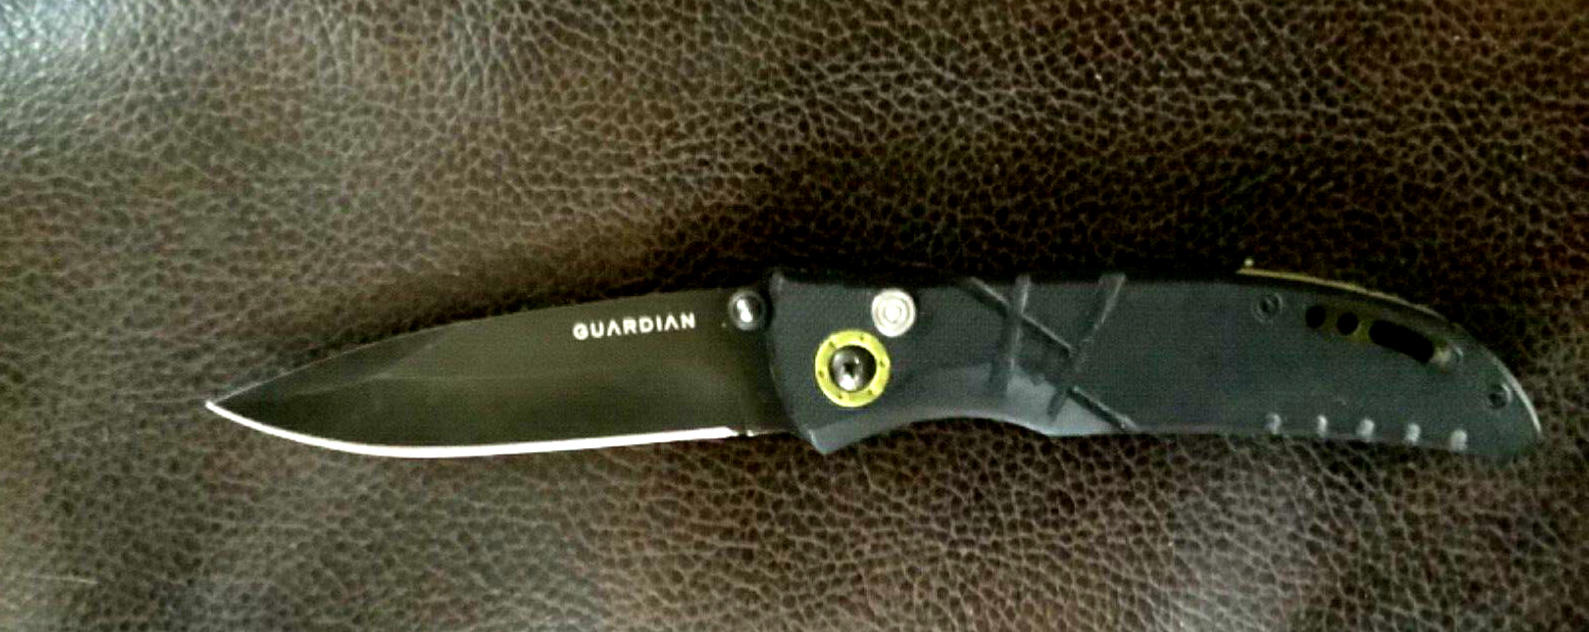 gerber guardian knife